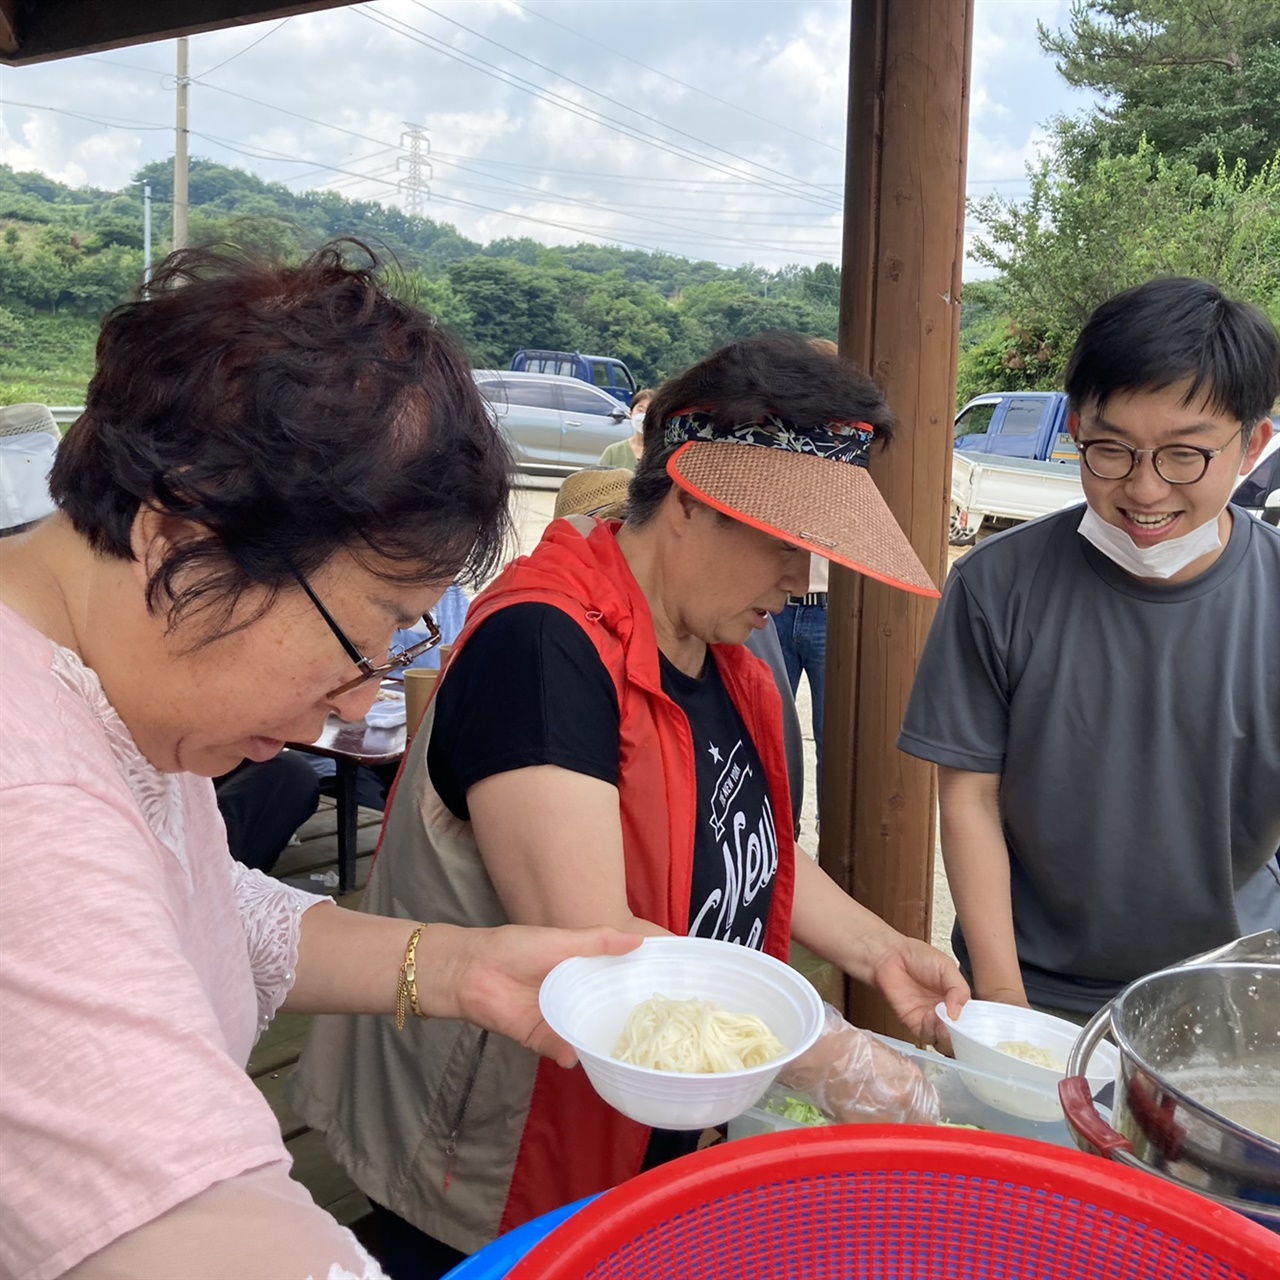 김만이 대표는 초록코끼리의 지역 정책을 위해 지역 농산물을 활용한 레스토랑을 열고 마을 주민들을 초대했다. 사진은 홍성군 대현리에서 '콩국수 레스토랑' 을 운영하는 모습.